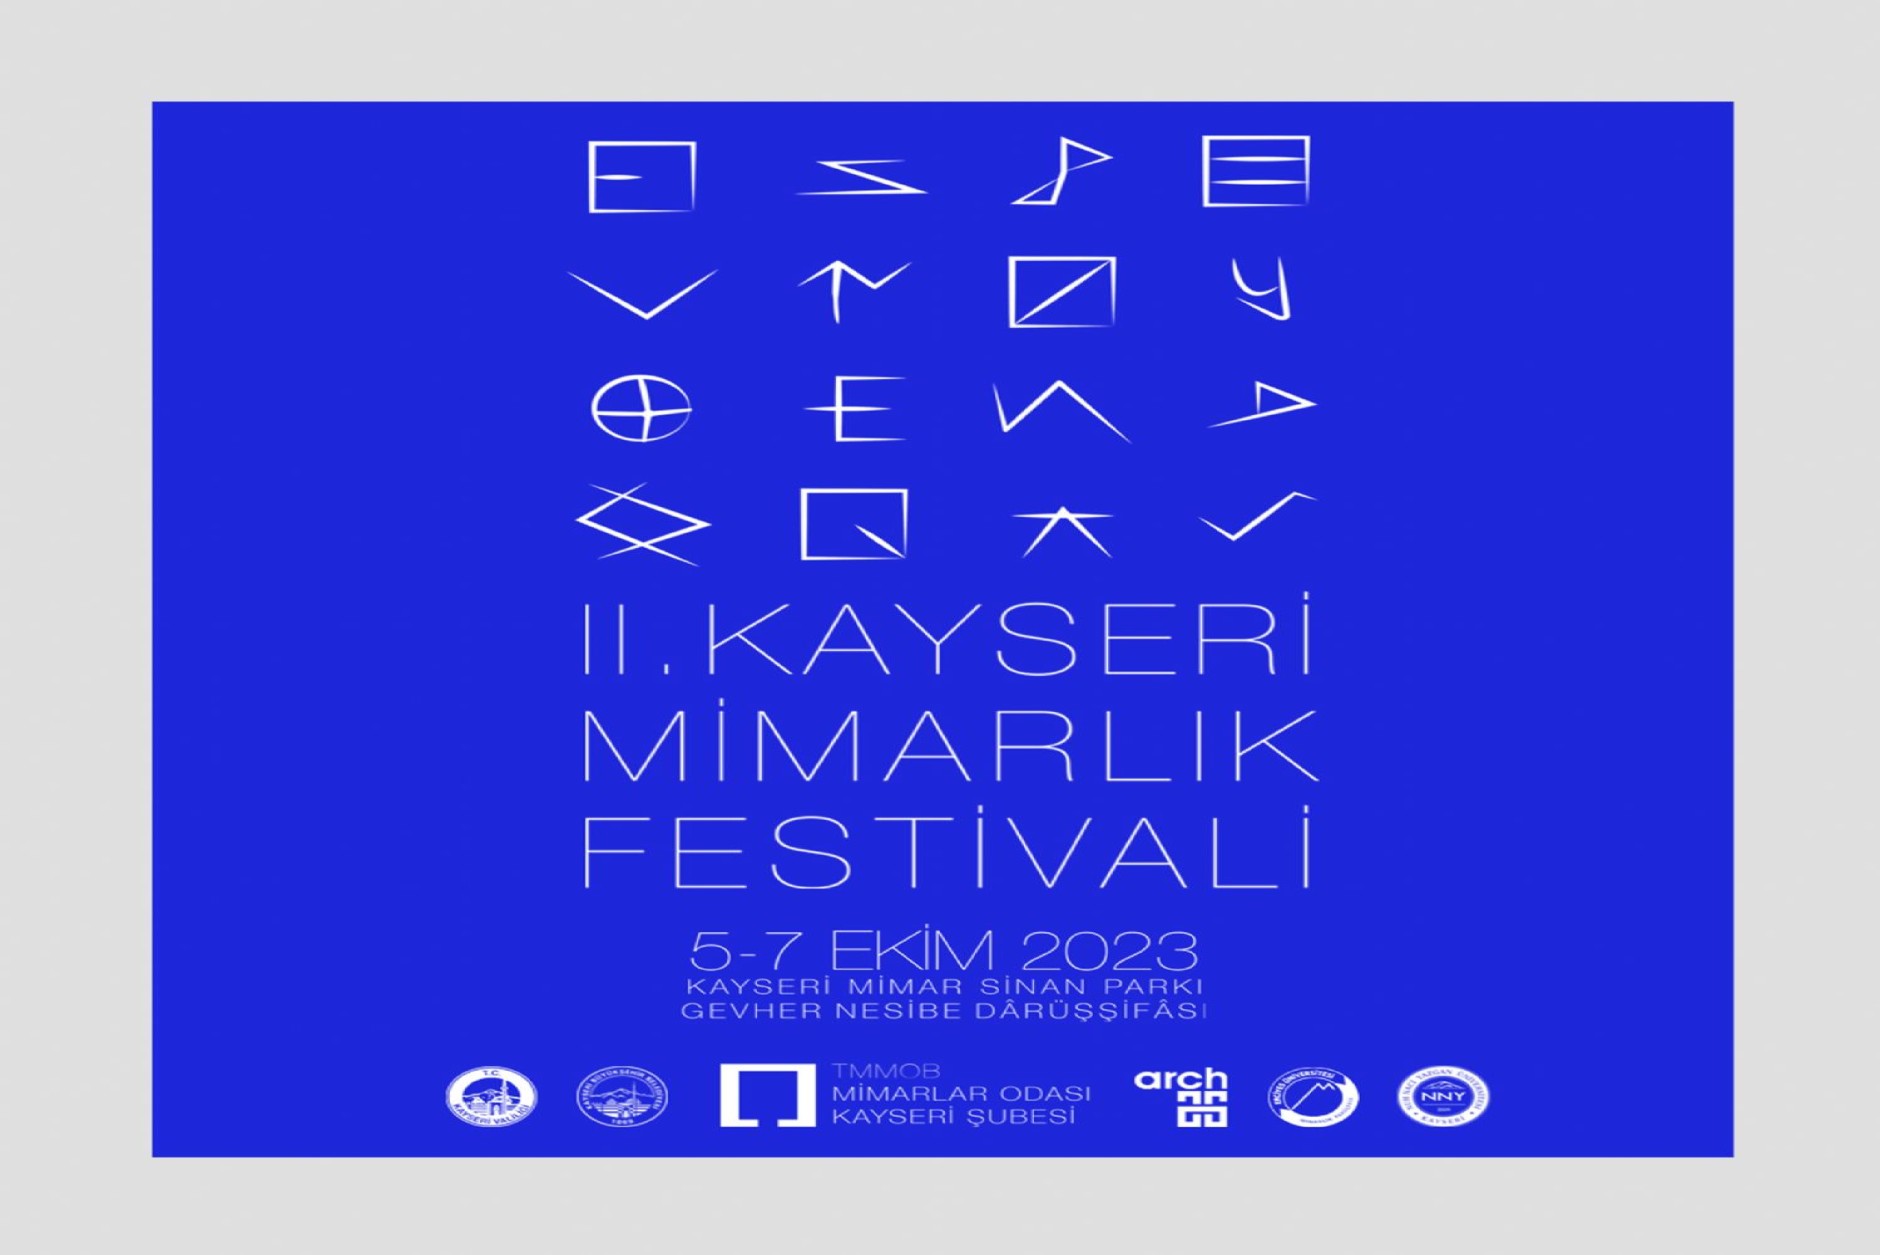 Kayseri Mimarlık Festivali 5-7 Ekim